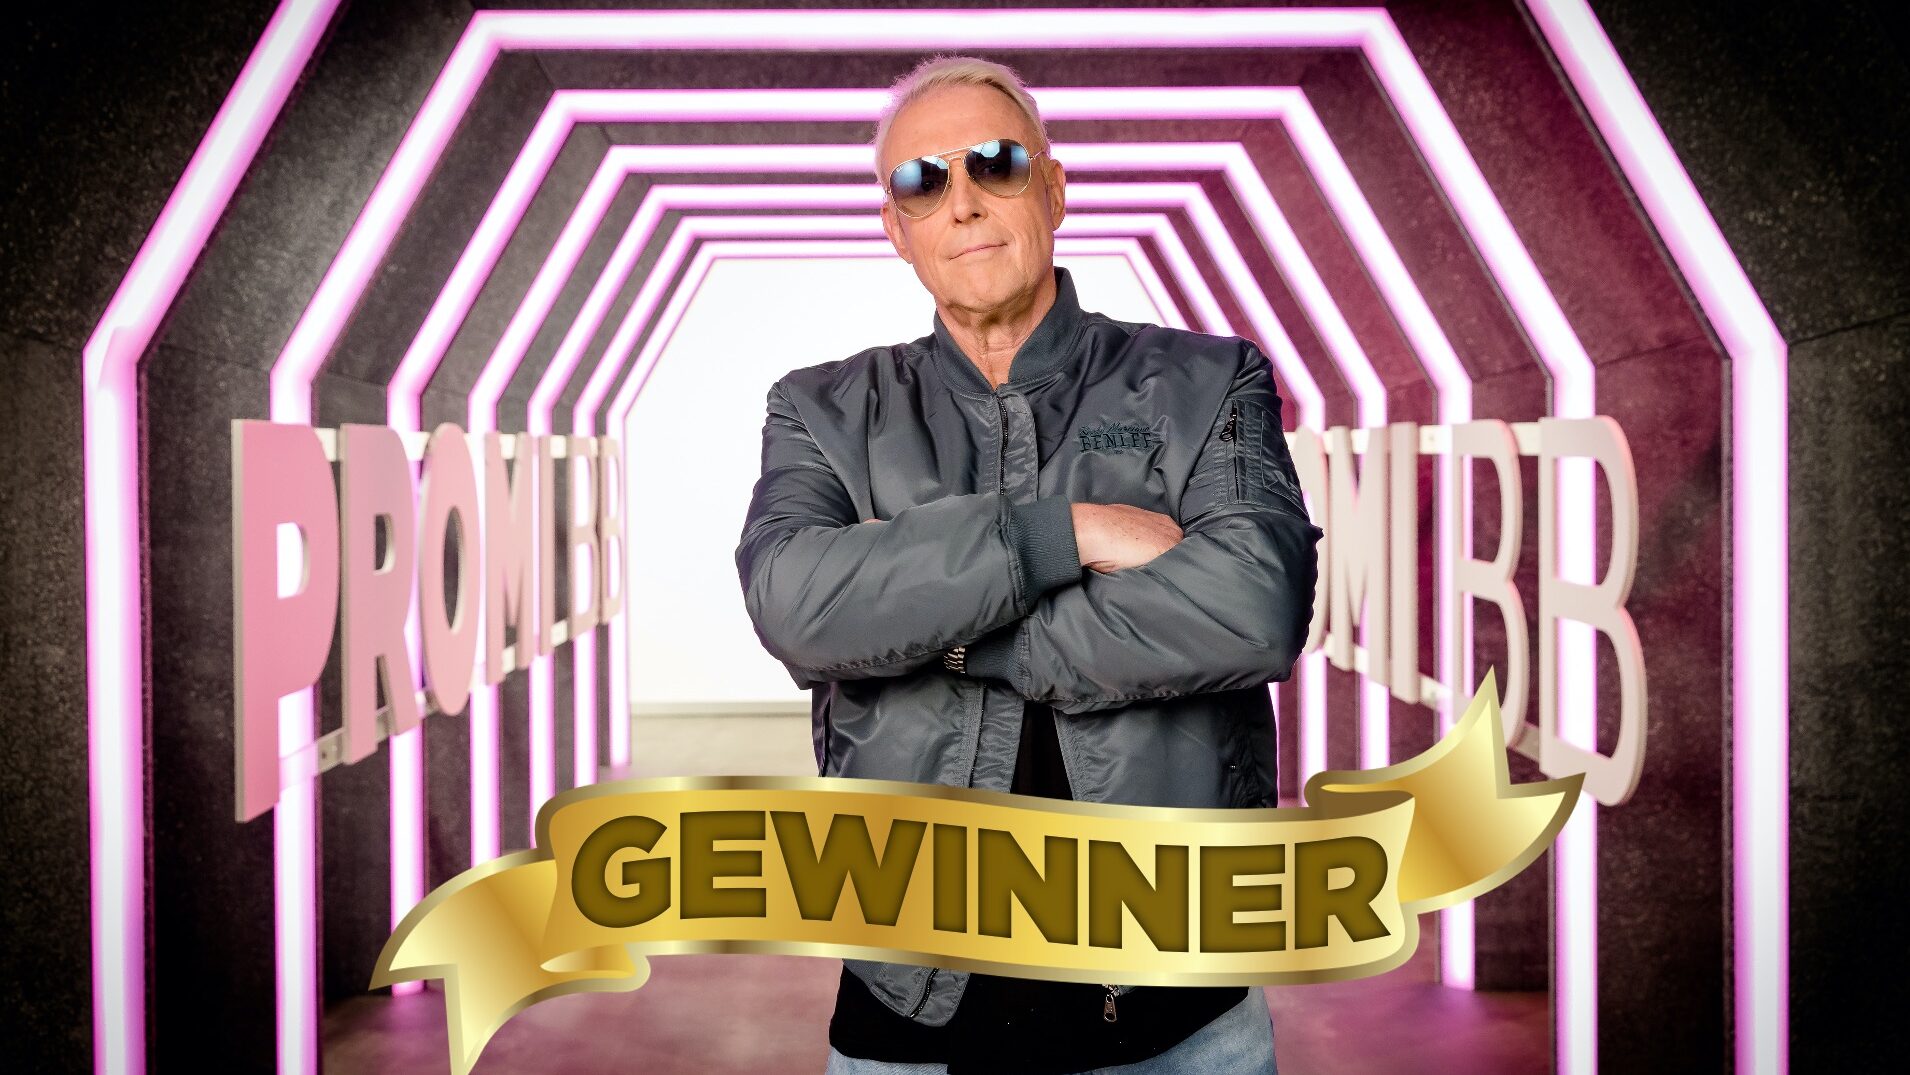 Promi Big Brother 2022 Gewinner: Rainer Gottwald gewinnt Staffel 10 6